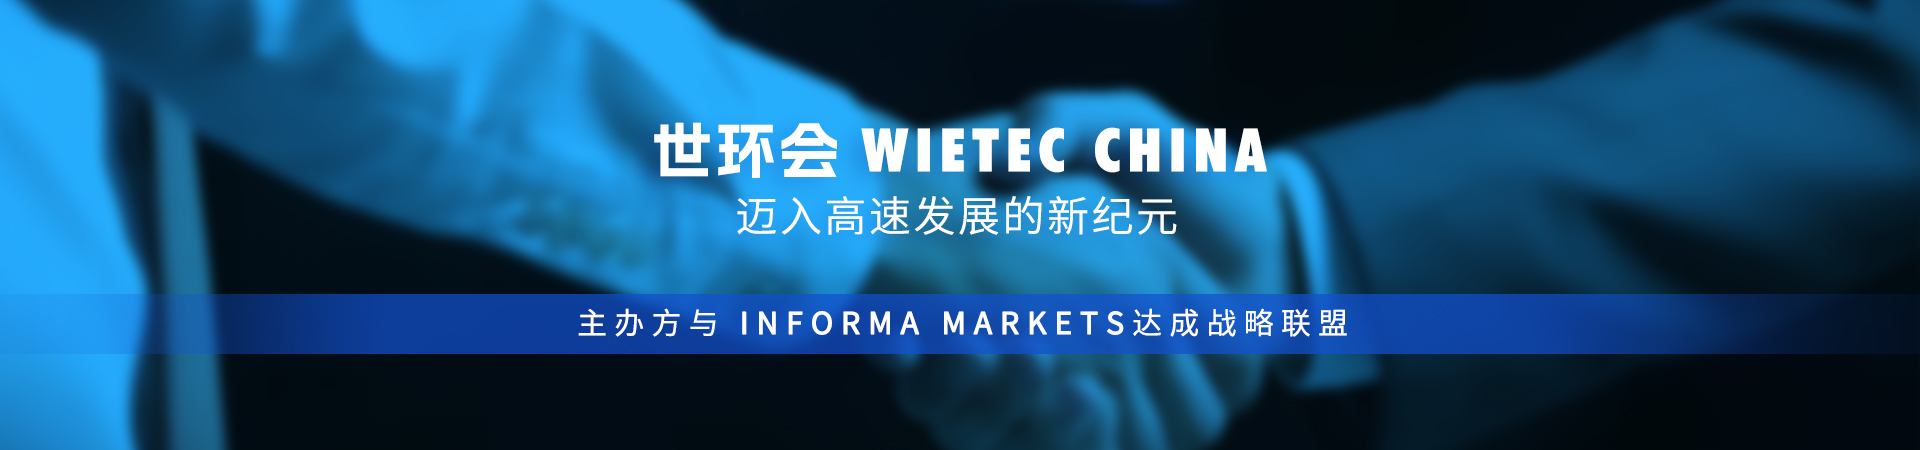 世環會WieTec China邁入高速發展的新紀元